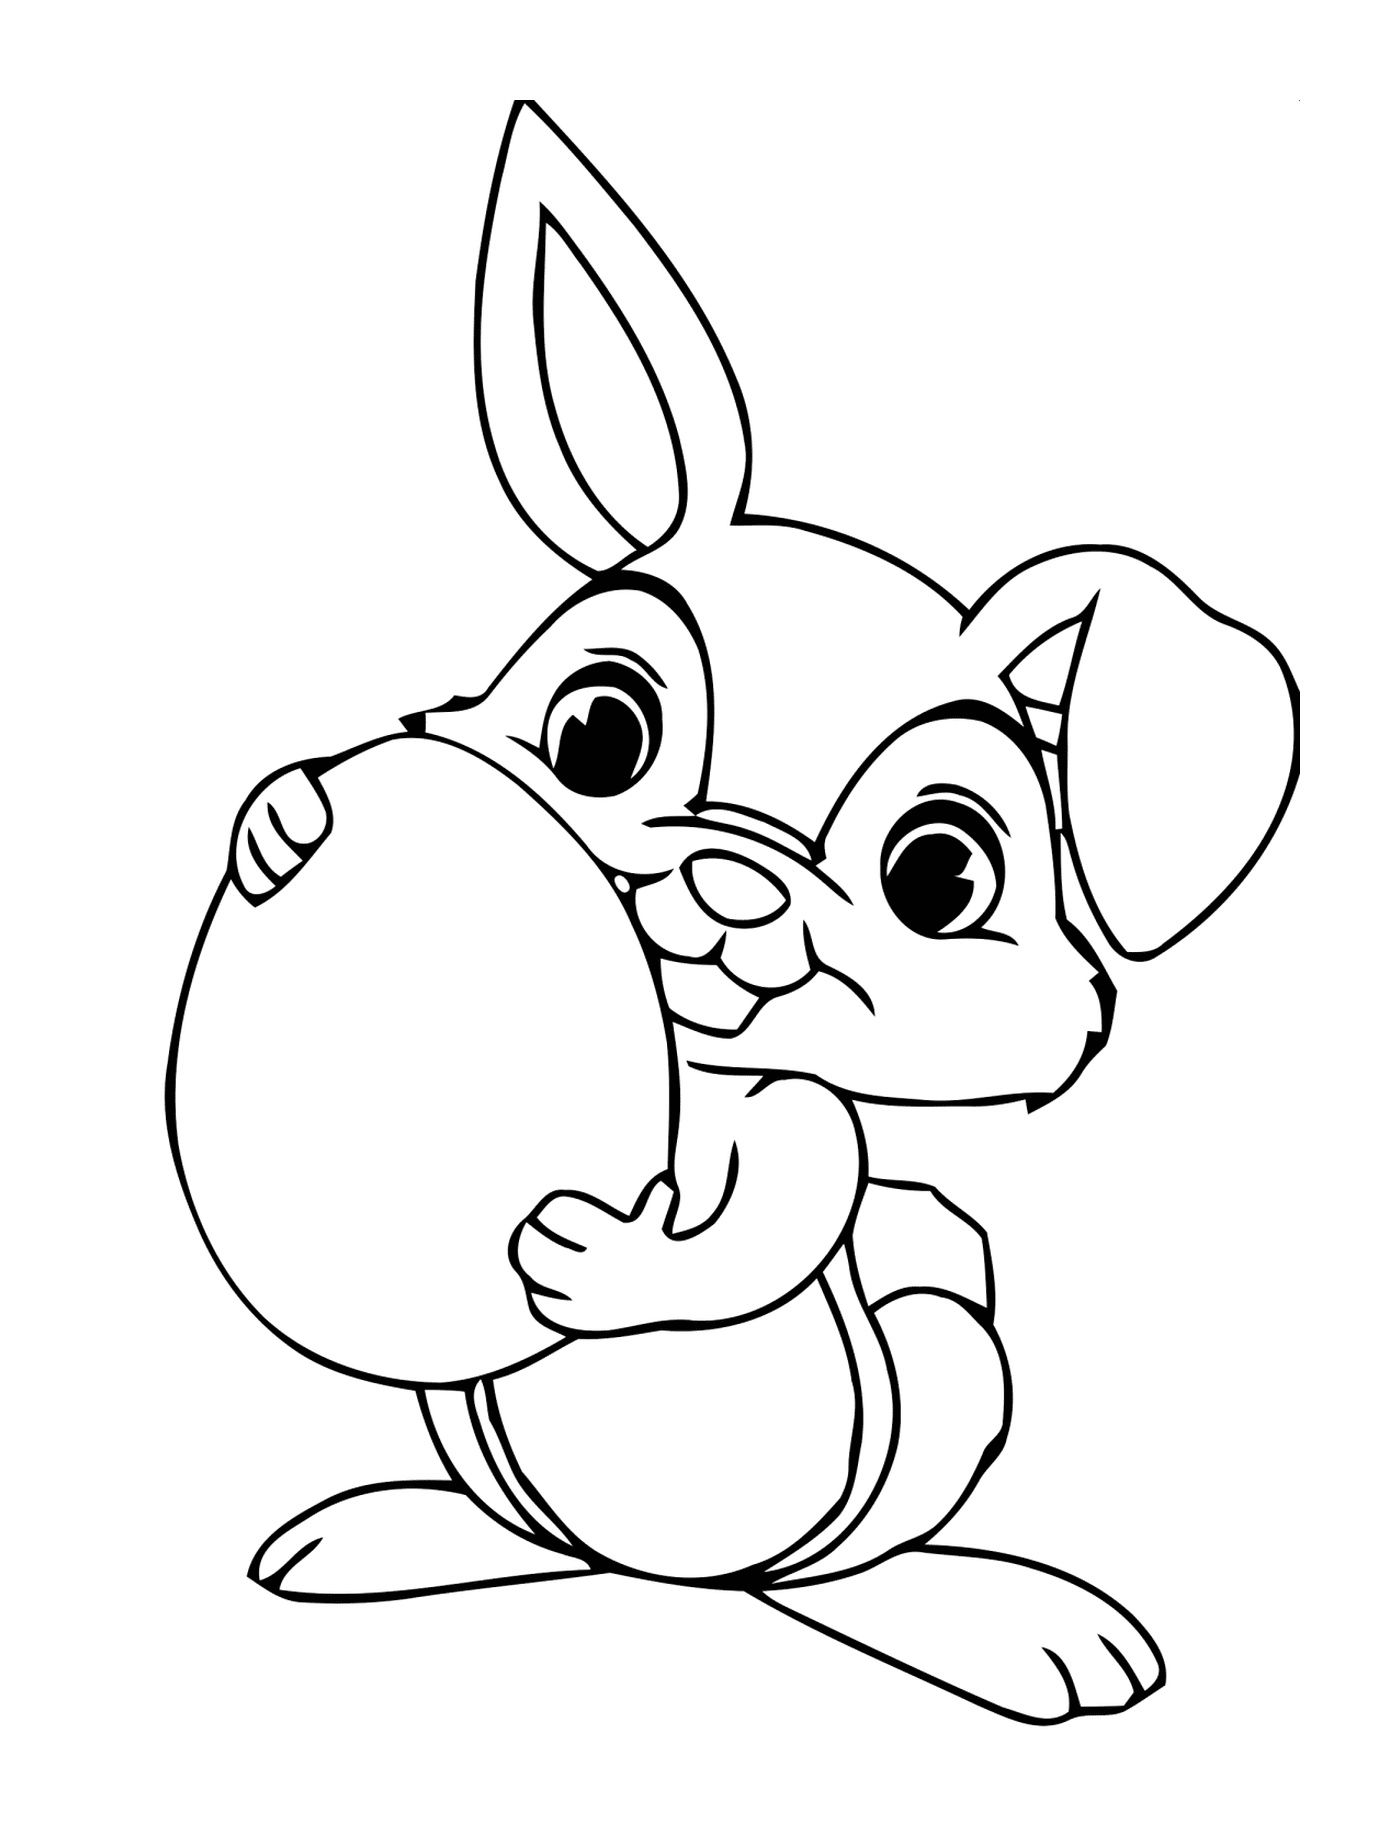  Rabbit holding an Easter egg 